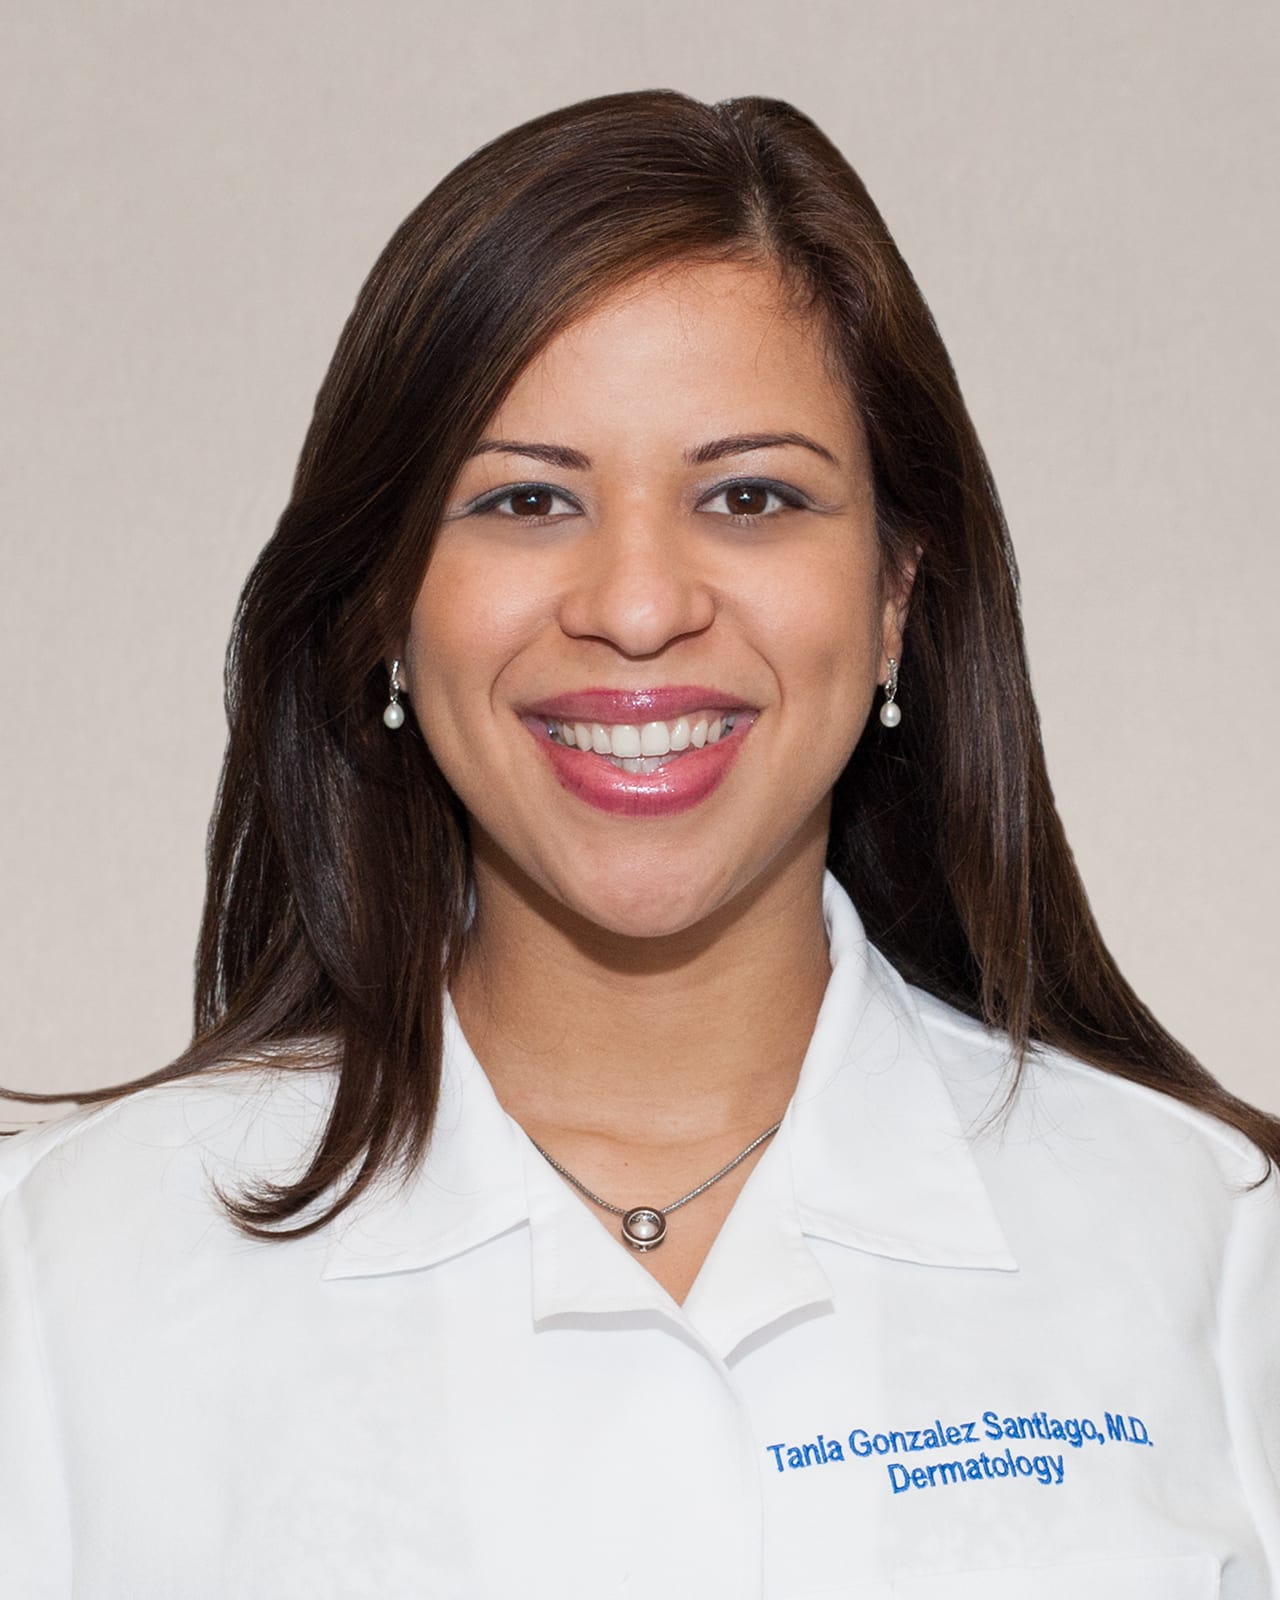 Dr. Tania Gonzalez Santiago